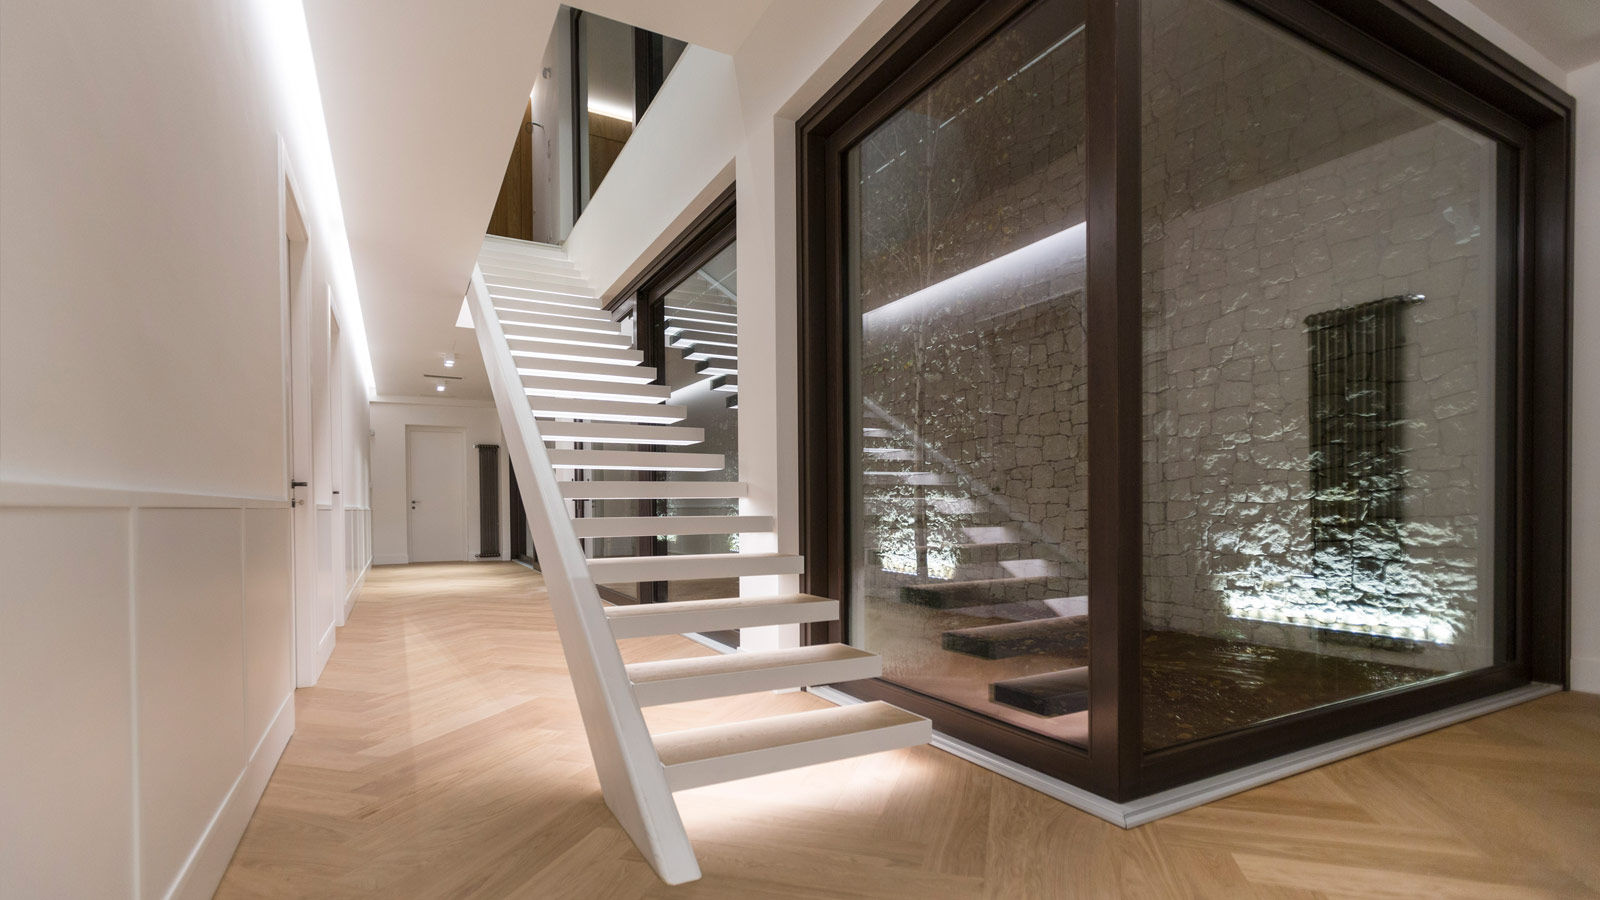 Villa Ferroli | Stairway GD Arredamenti Schody Deski kompozytowe Przeźroczysty GD Arredamenti,GeD Cucine,GD Cucine,staircase,stairway,ladder,white house,glass facade,marble flooring